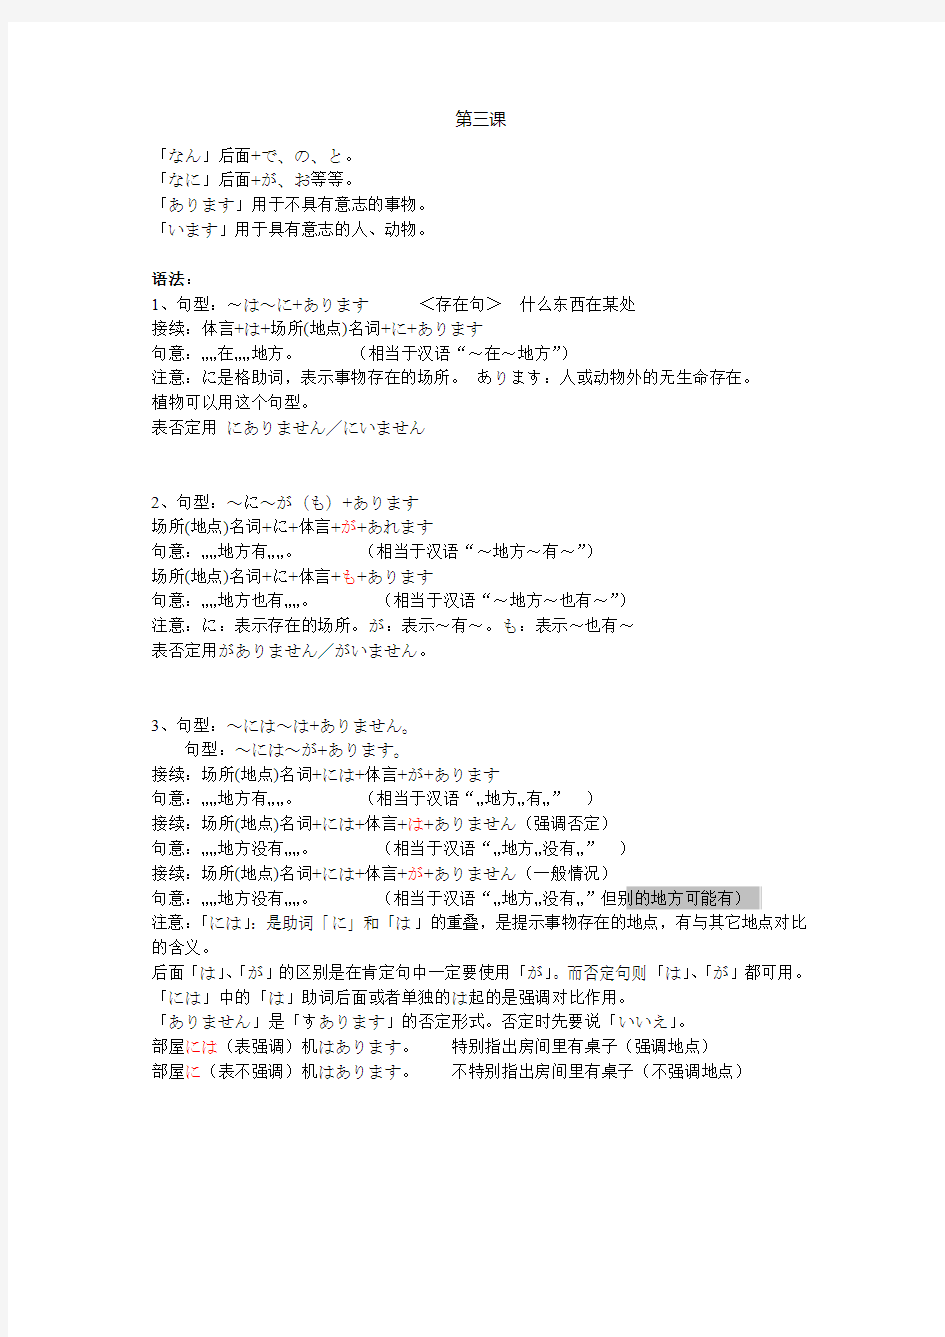 新编日语(修订版) 3-5课语法详解